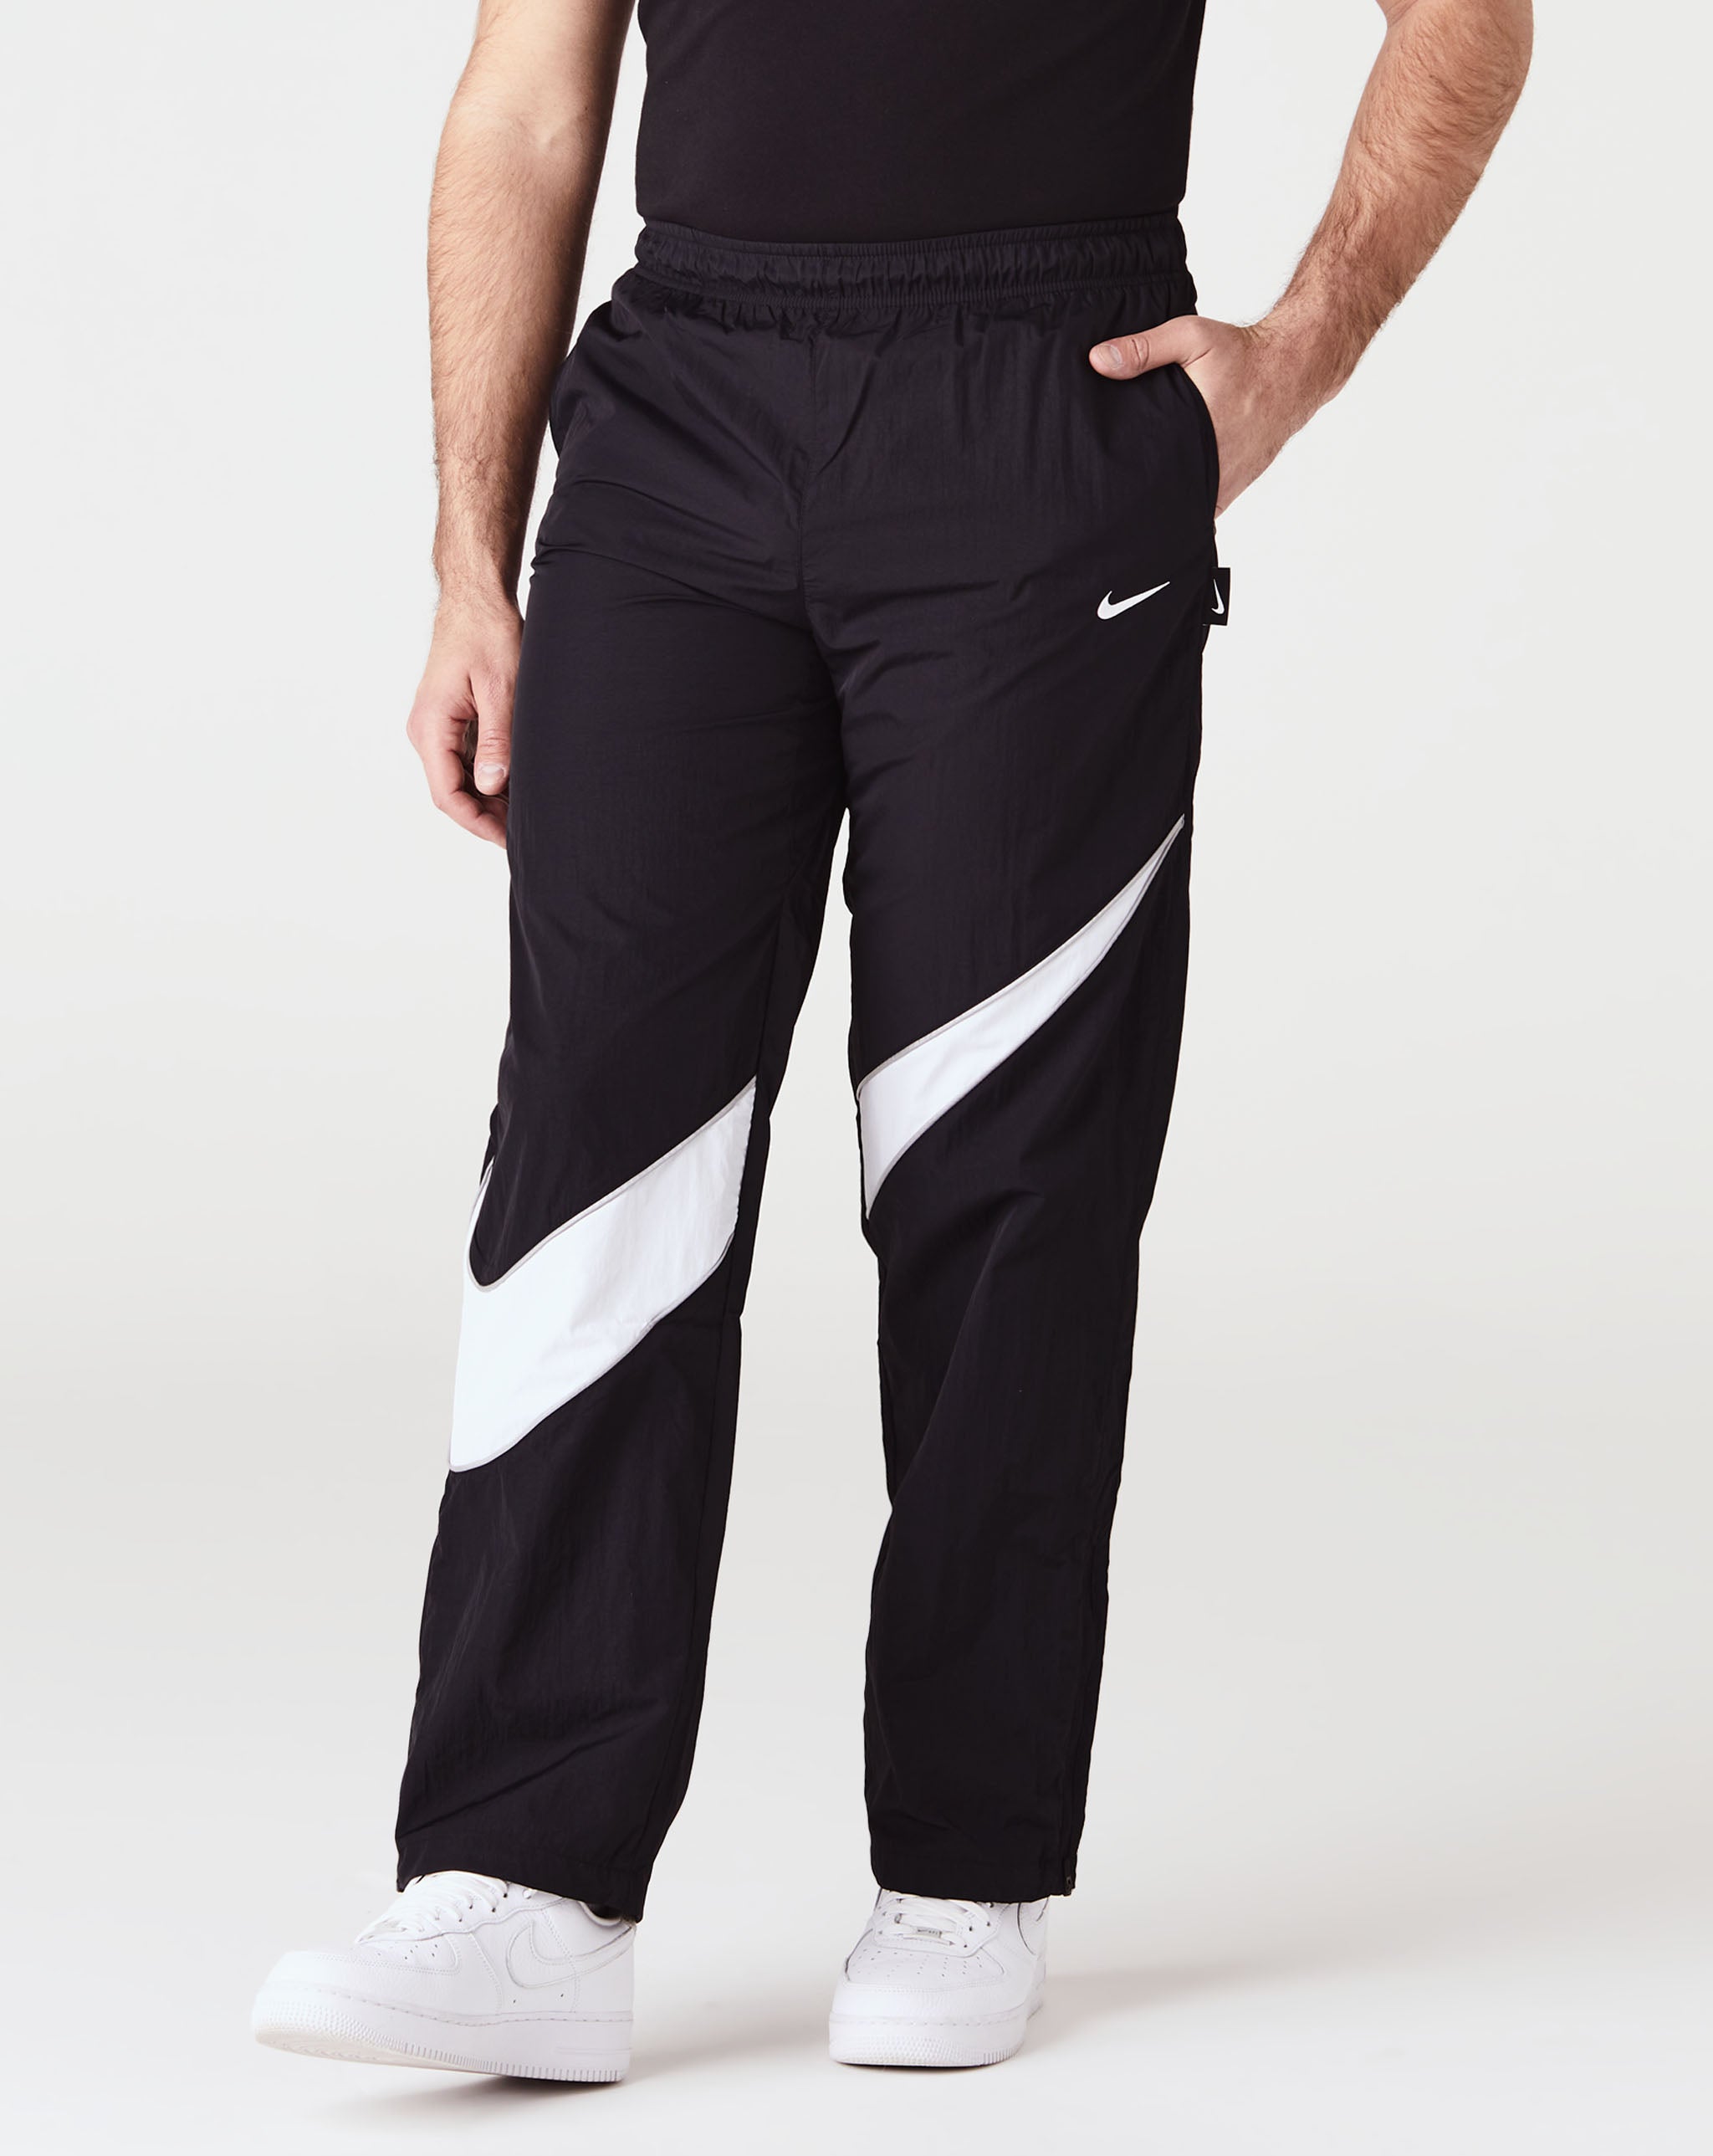 Nike Sportswear Casual Trousers 'Black' - CJ3690-010 | Solesense